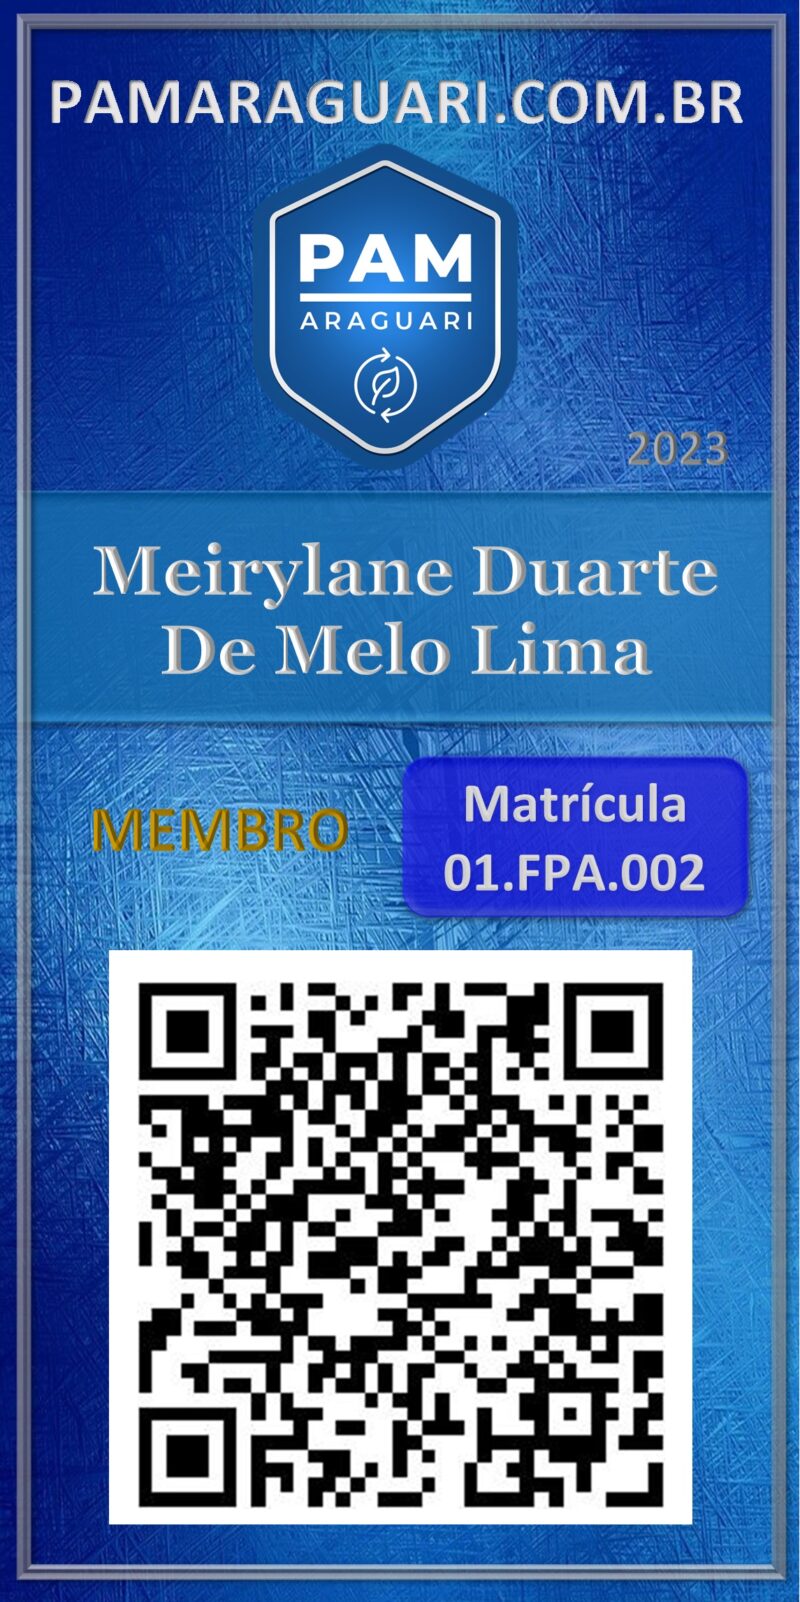 Meirylane Duarte De Melo Lima